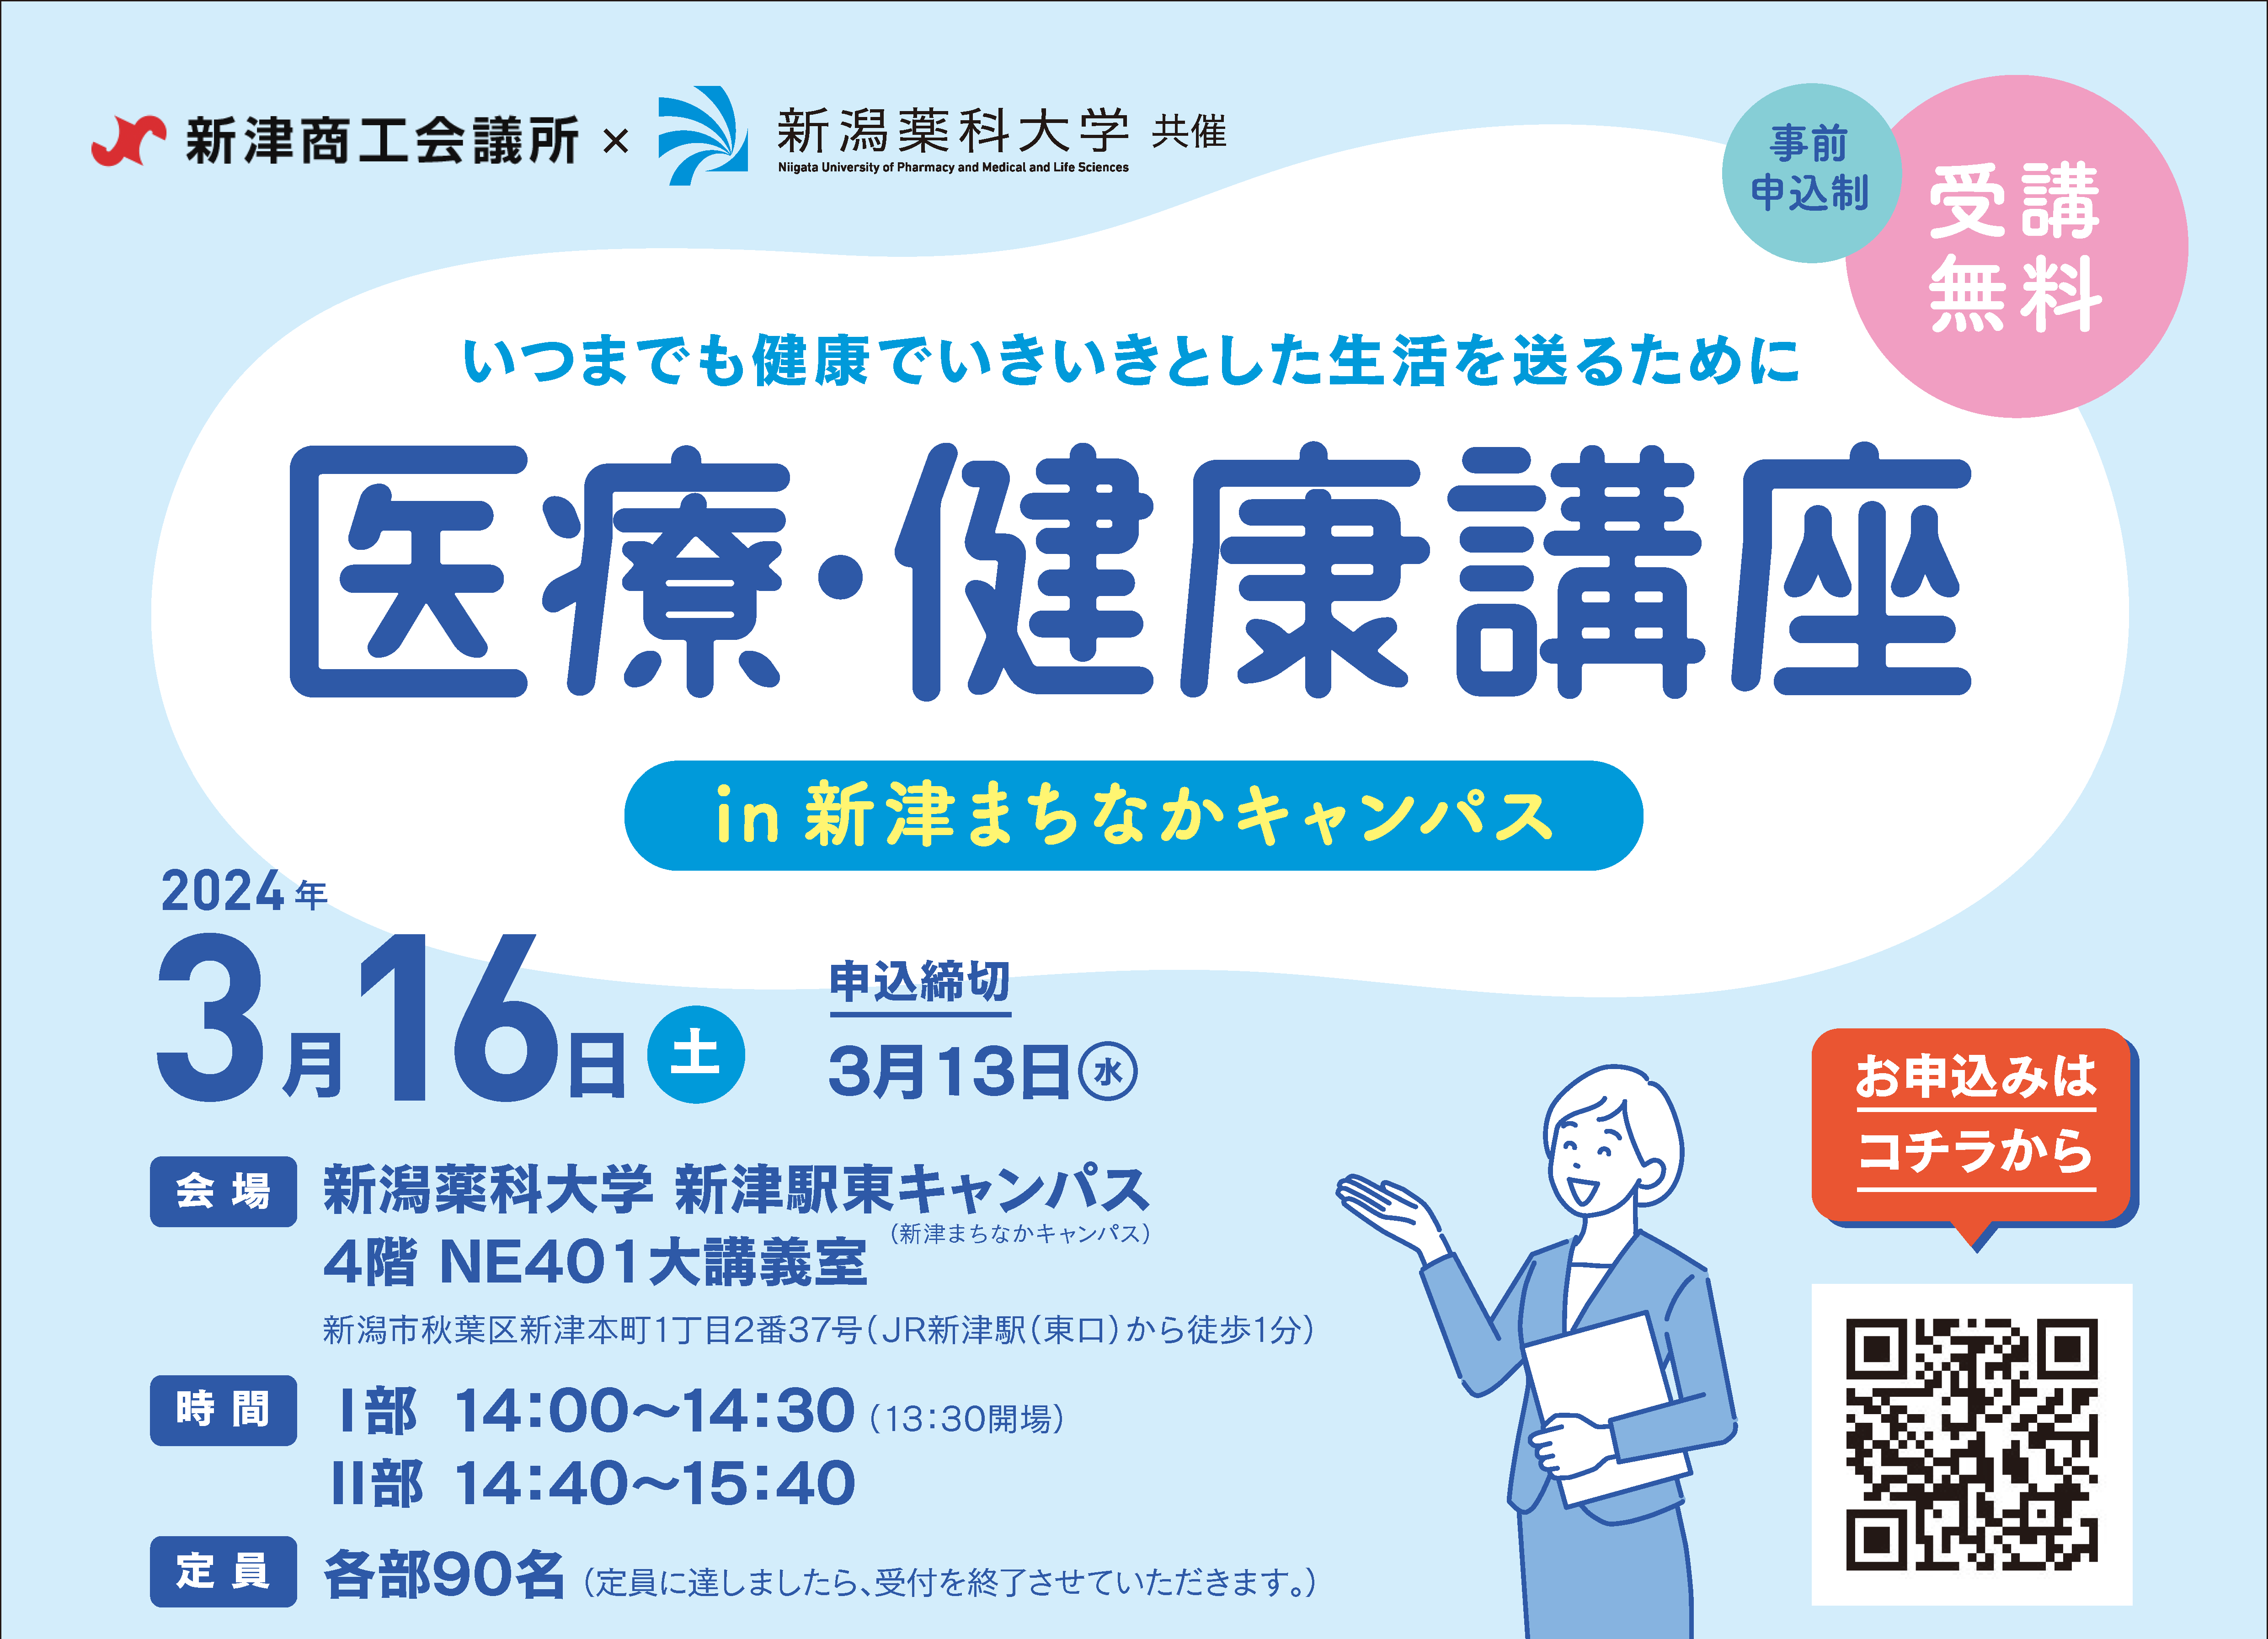 公開講座「医療・健康講座 in 新津まちなかキャンパス」を開催します